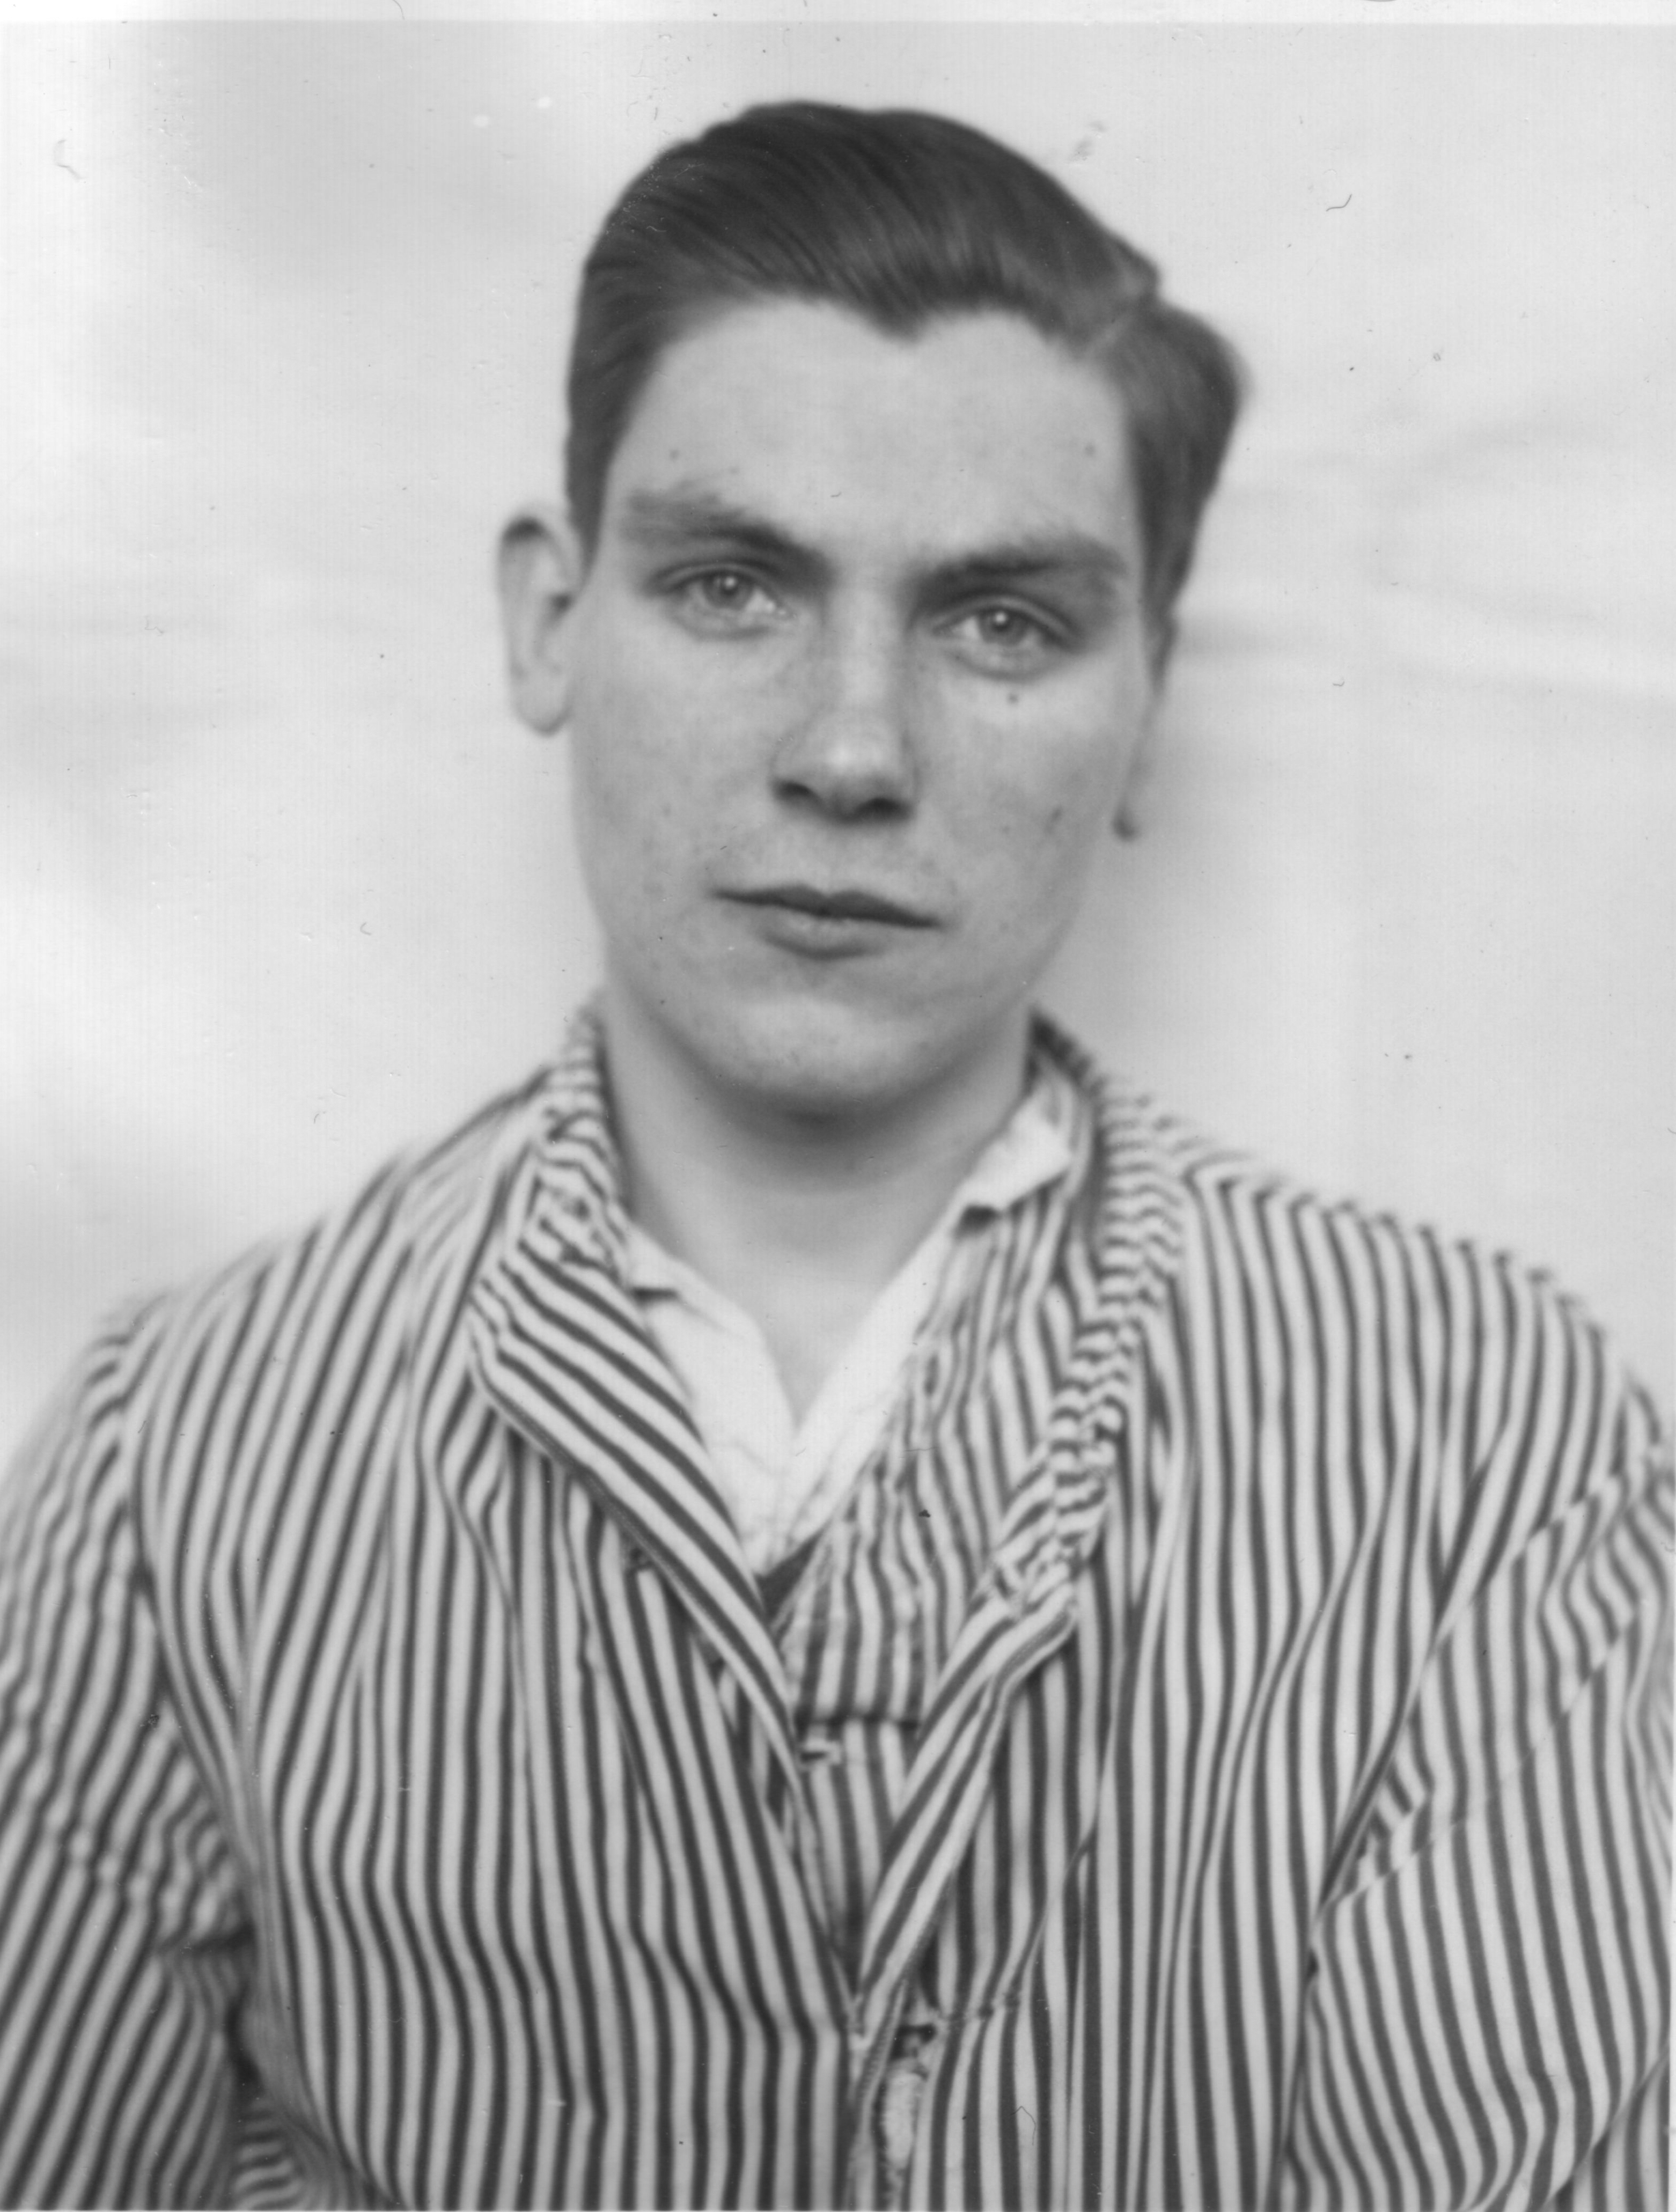 Kurt Gth, genannt Ladiges, in Anstaltskleidung der Heil- und Pflegeanstalt Langenhorn, ca. 1940